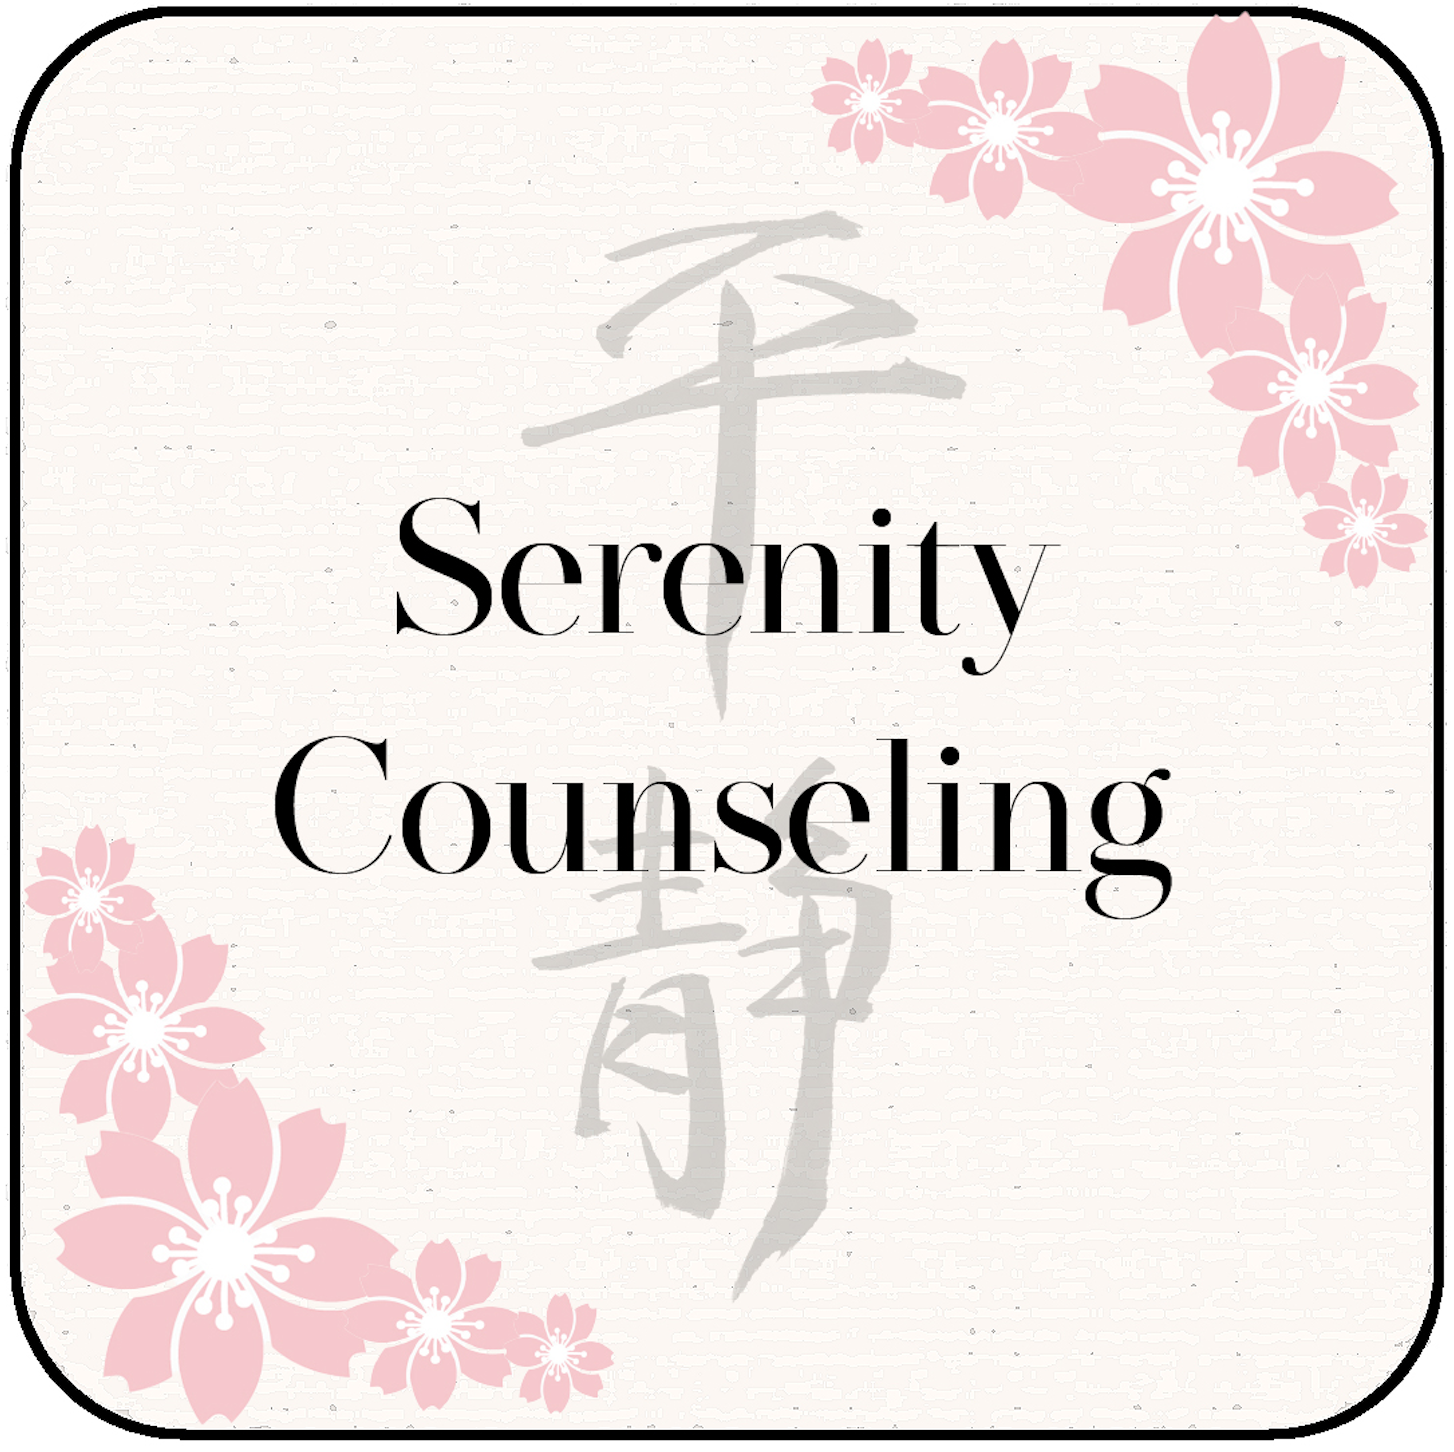 Logotipo de Serenity Counseling, que simboliza la serenidad después de la terapia.